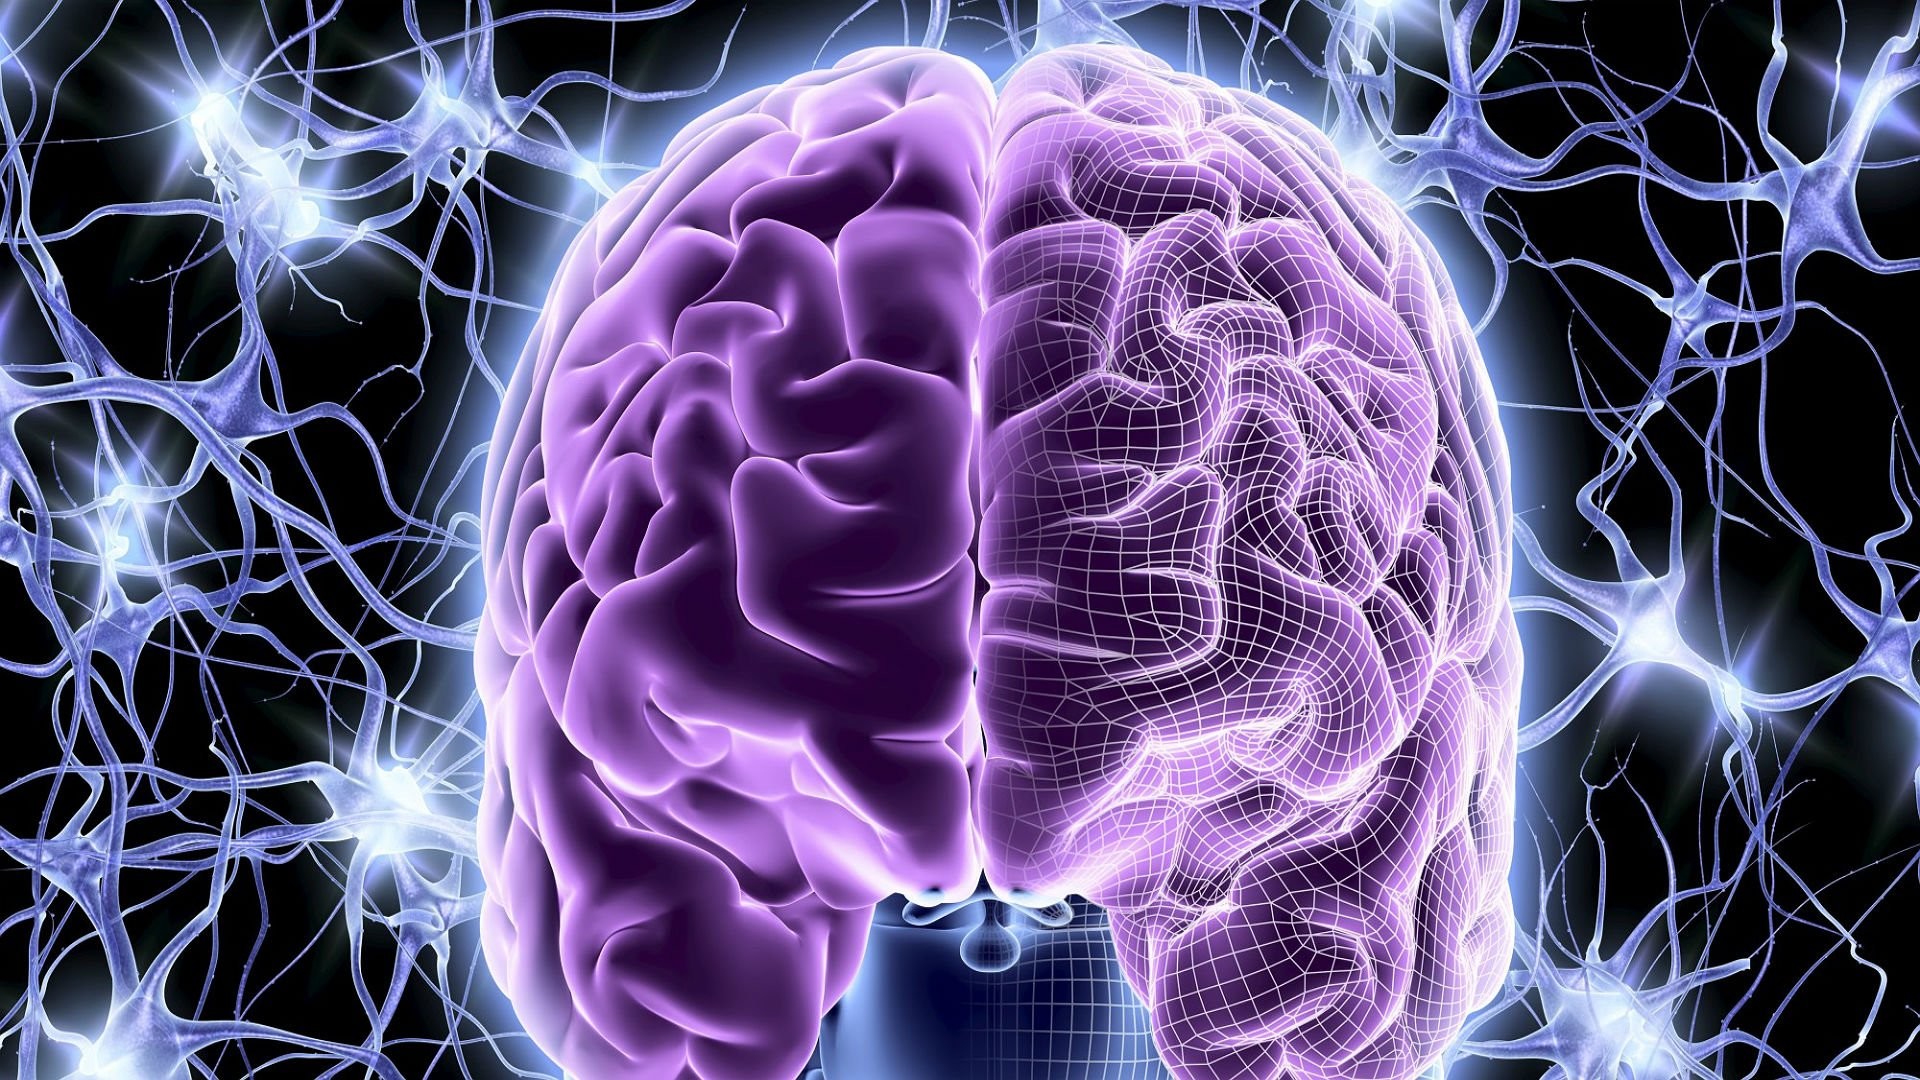 cerebro fondo de pantalla hd,cerebro,médico,cerebro,púrpura,imagenes medicas